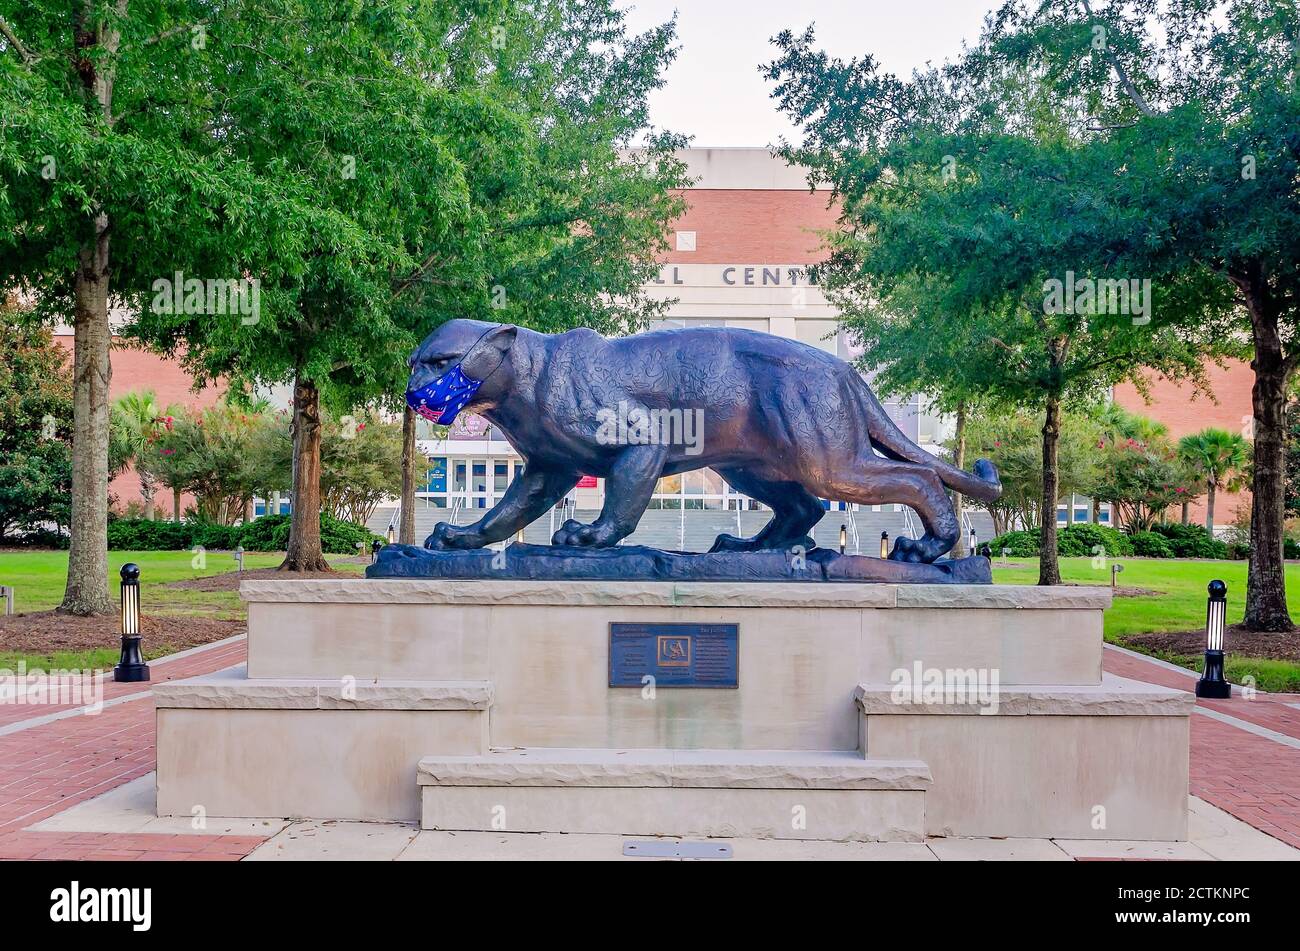 La mascotte de l'Université de l'Alabama du Sud, la jaguar, porte un masque pour empêcher la COVID-19, 22 août 2020, à Mobile, Alabama. Banque D'Images